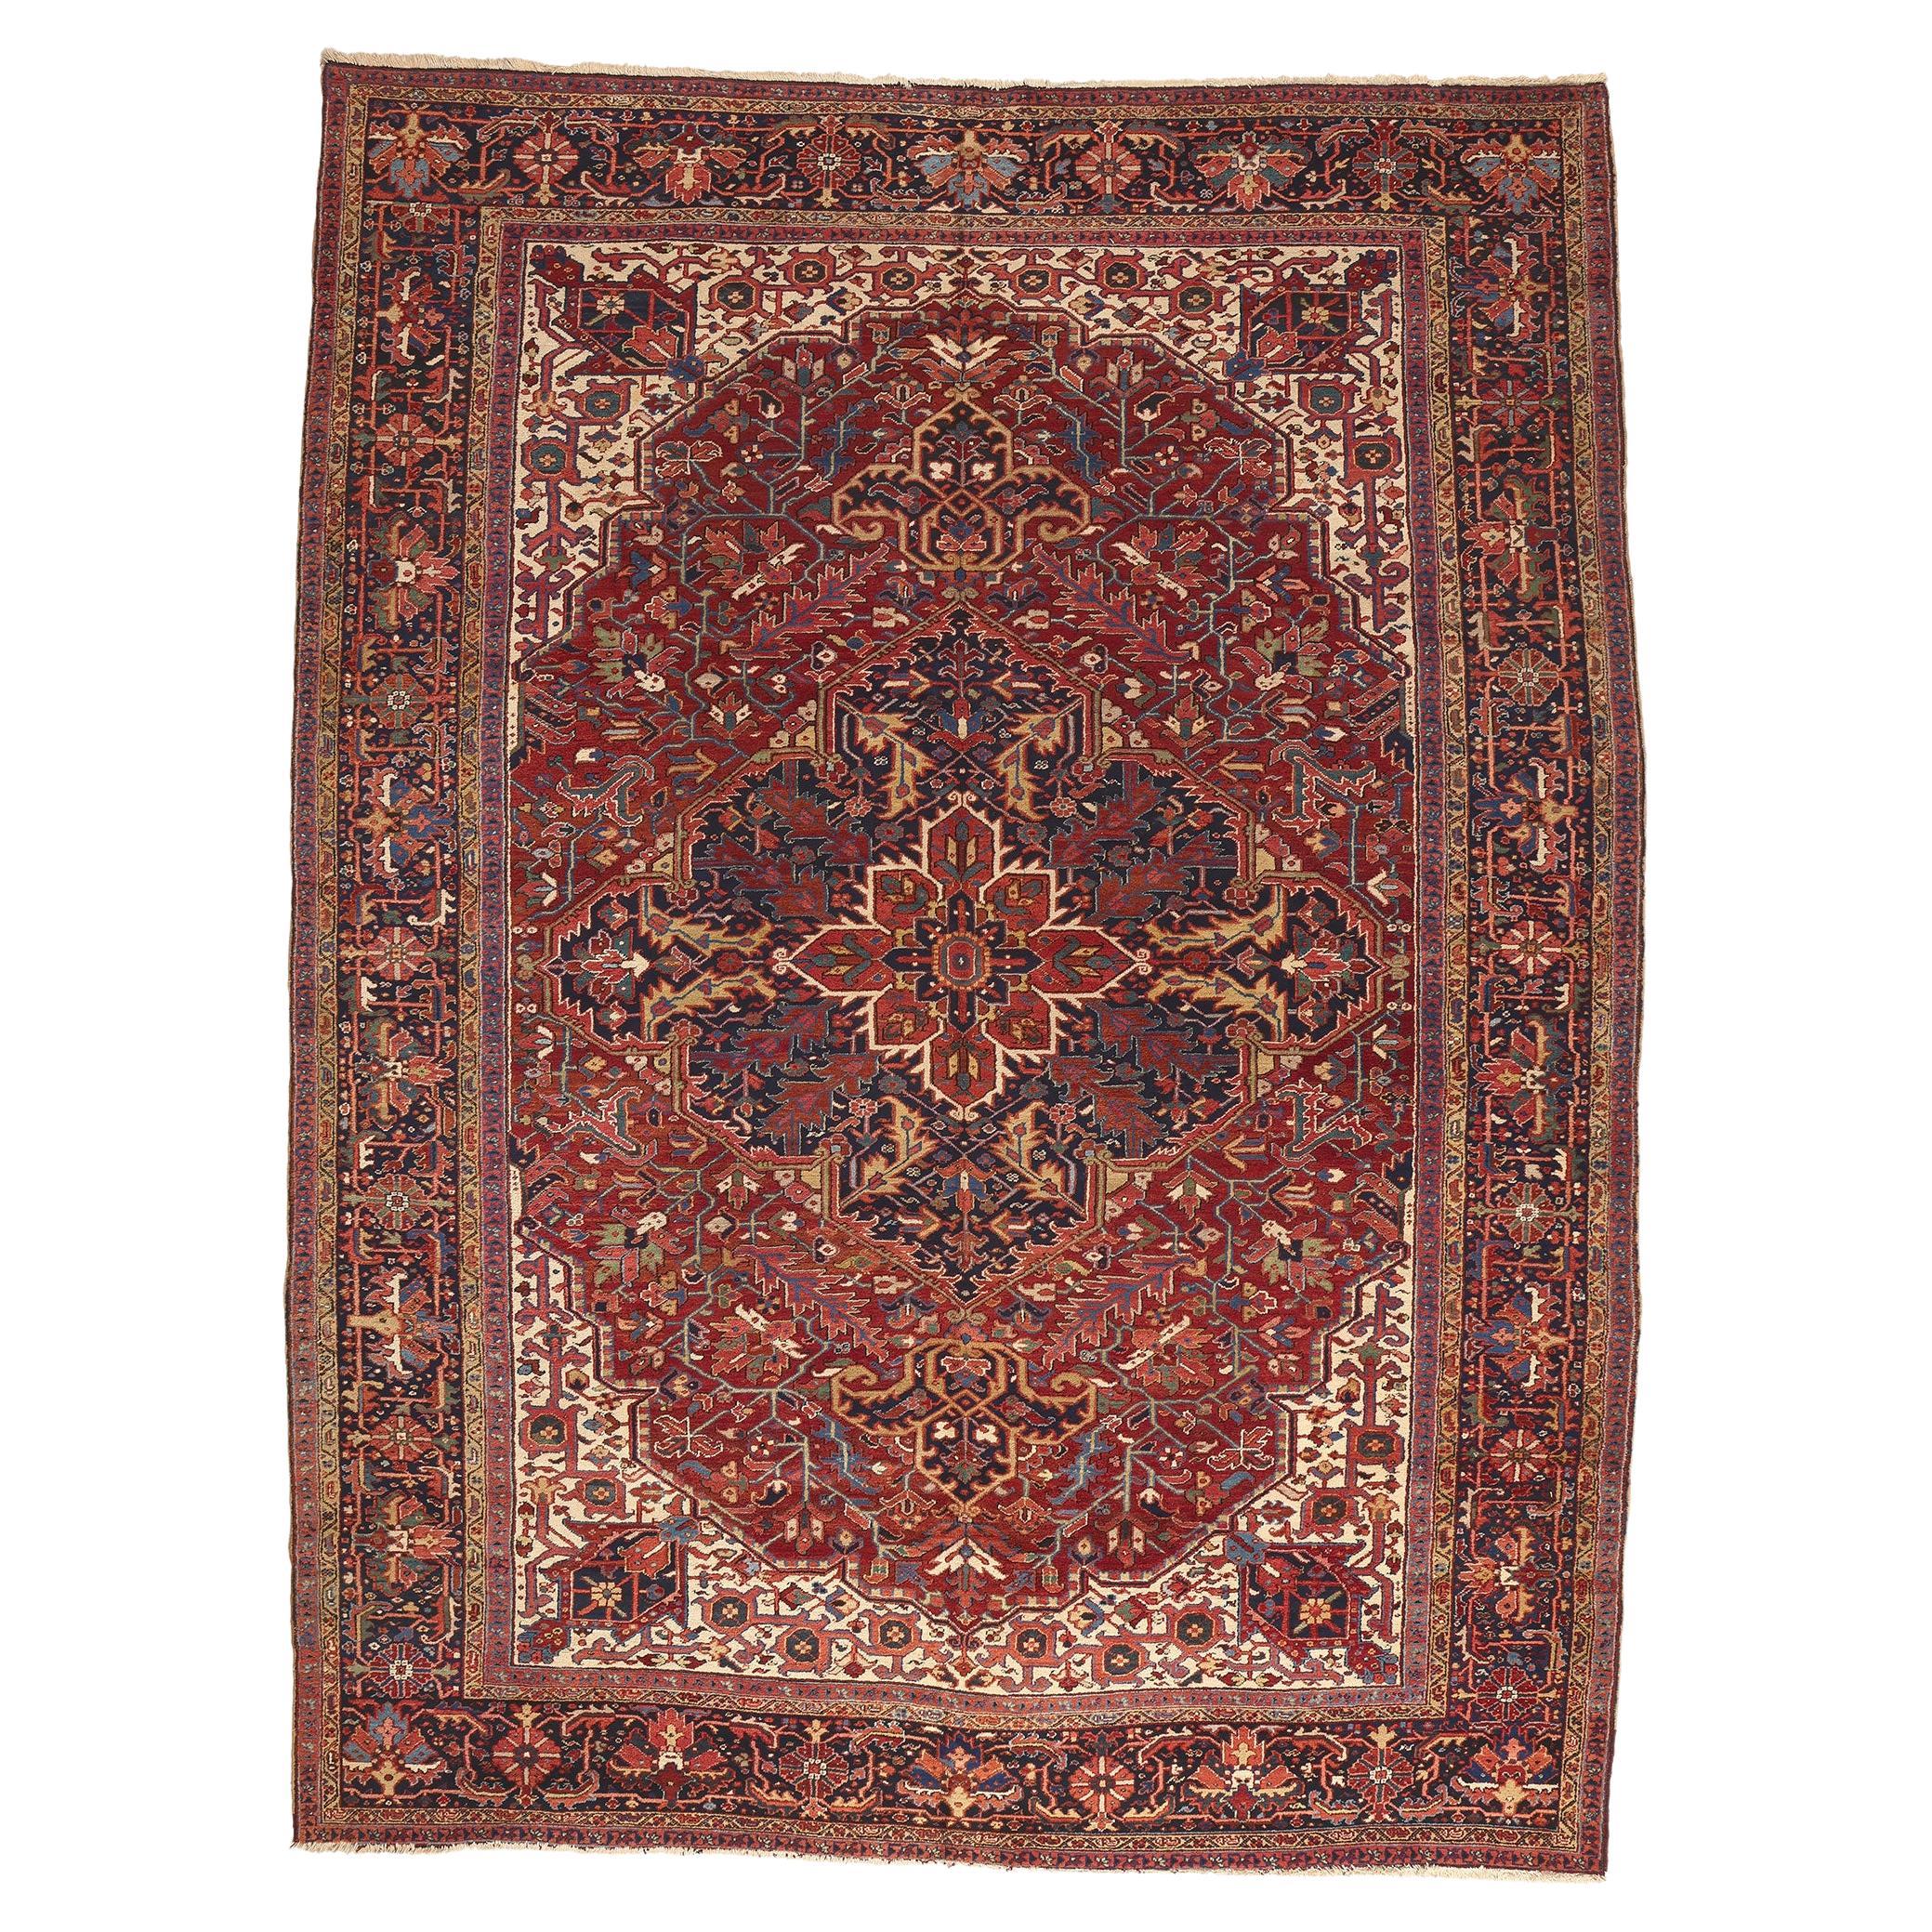 Grand tapis persan rouge ancien Heriz des années 1920 